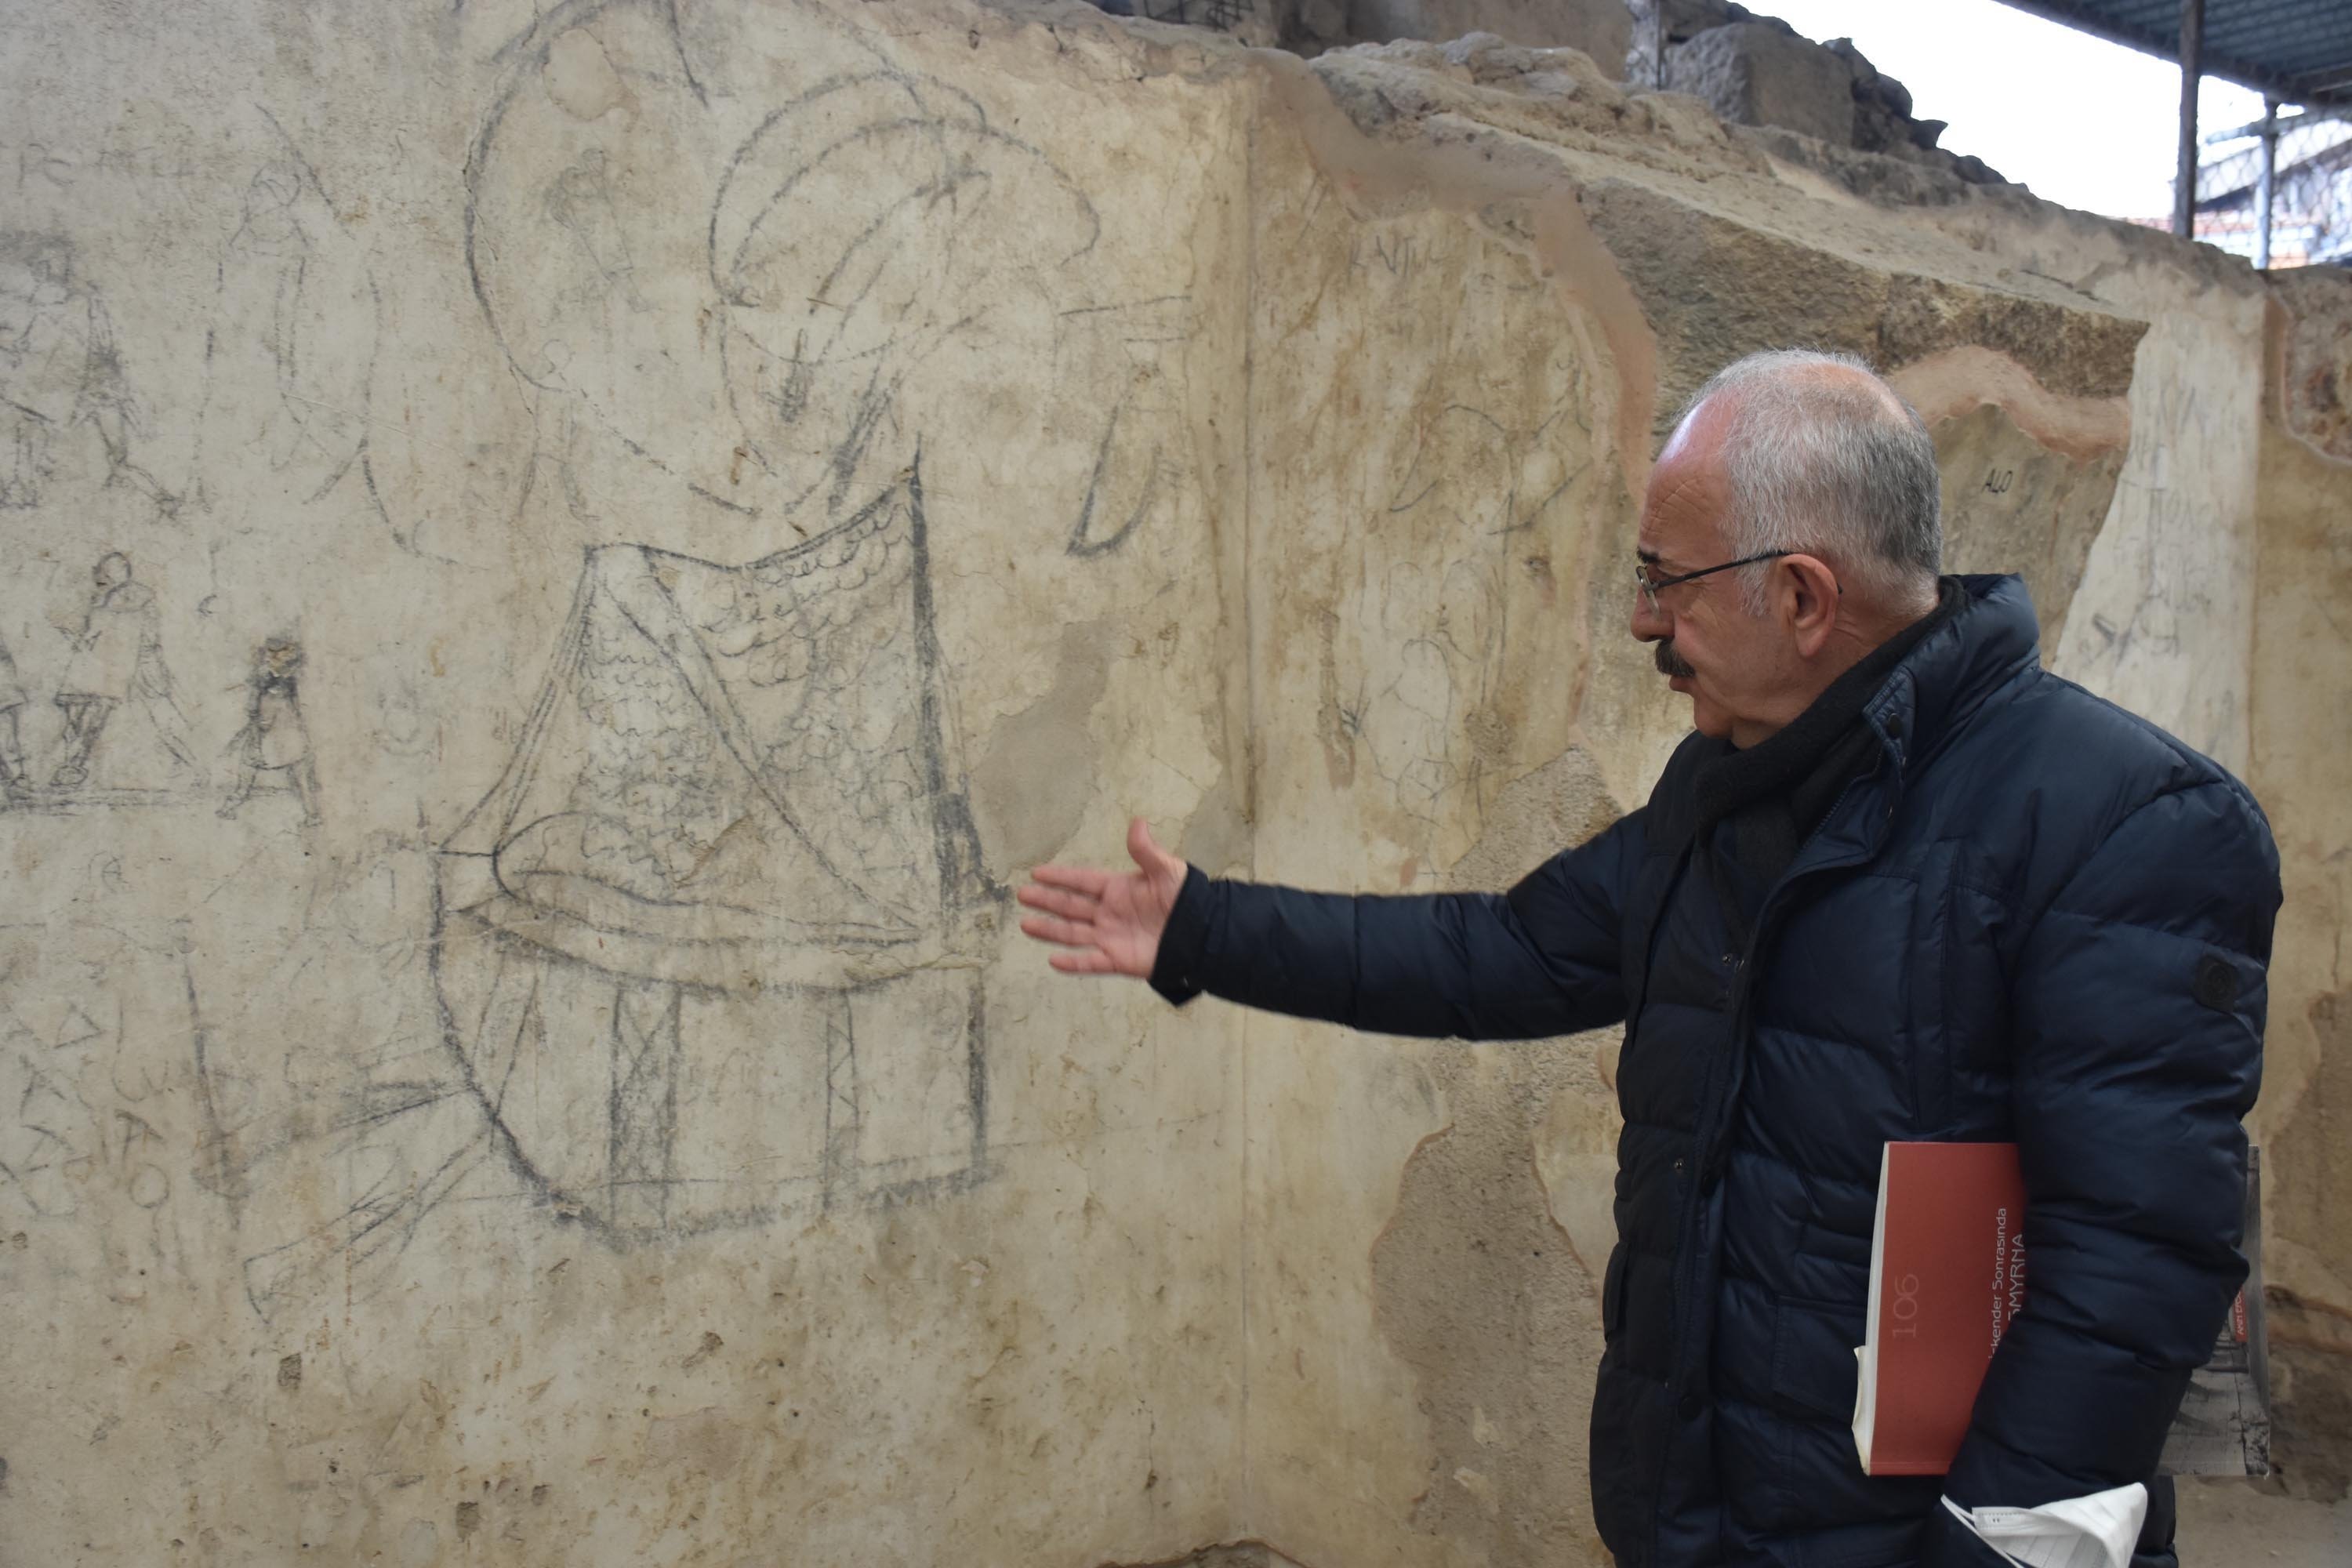 Izmir Katip elebi University Anggota fakultas Turki dan Arkeologi Islam Akın Ersoy berbicara tentang grafiti kapal yang ditemukan di ruang bawah tanah basilika, Agora of Smyrna, Izmir, Turki barat daya, 9 Maret 2022. (Foto DHA)